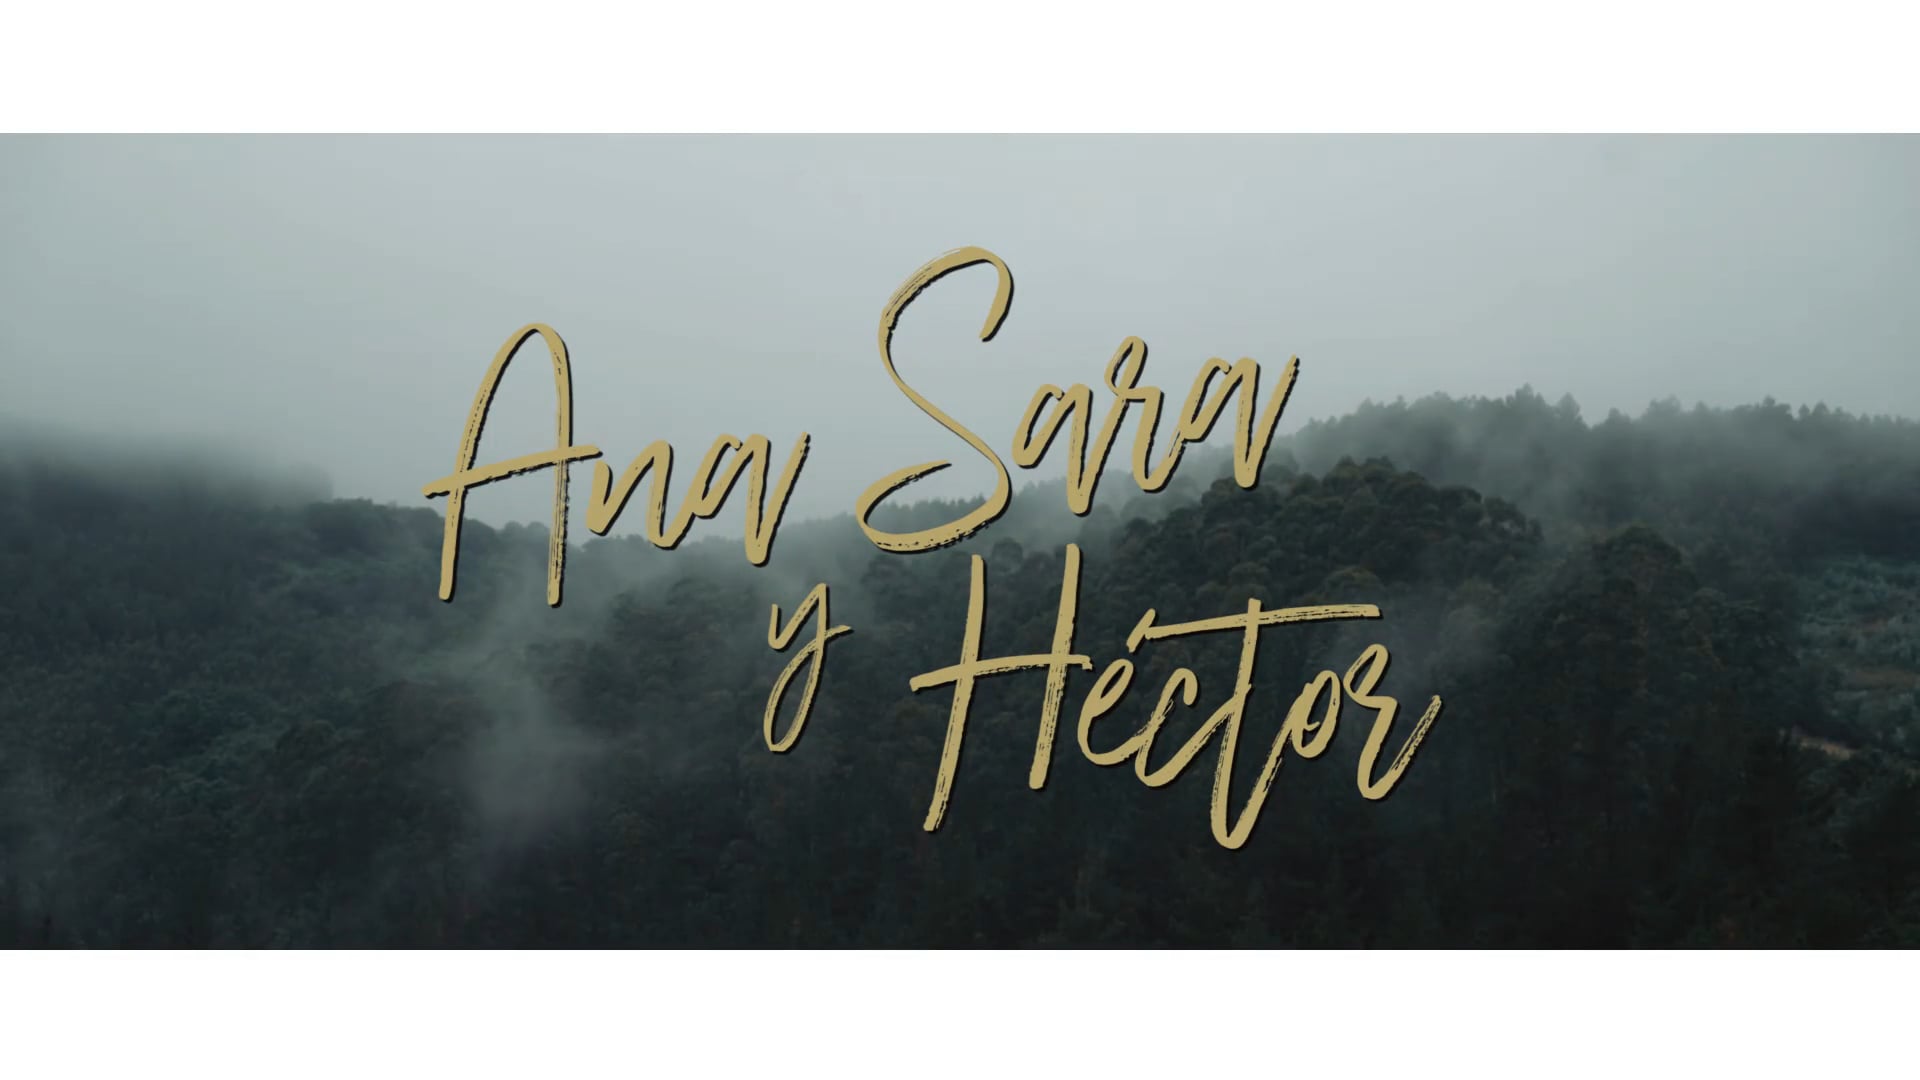 Ana Sara & Héctor (Trailer)